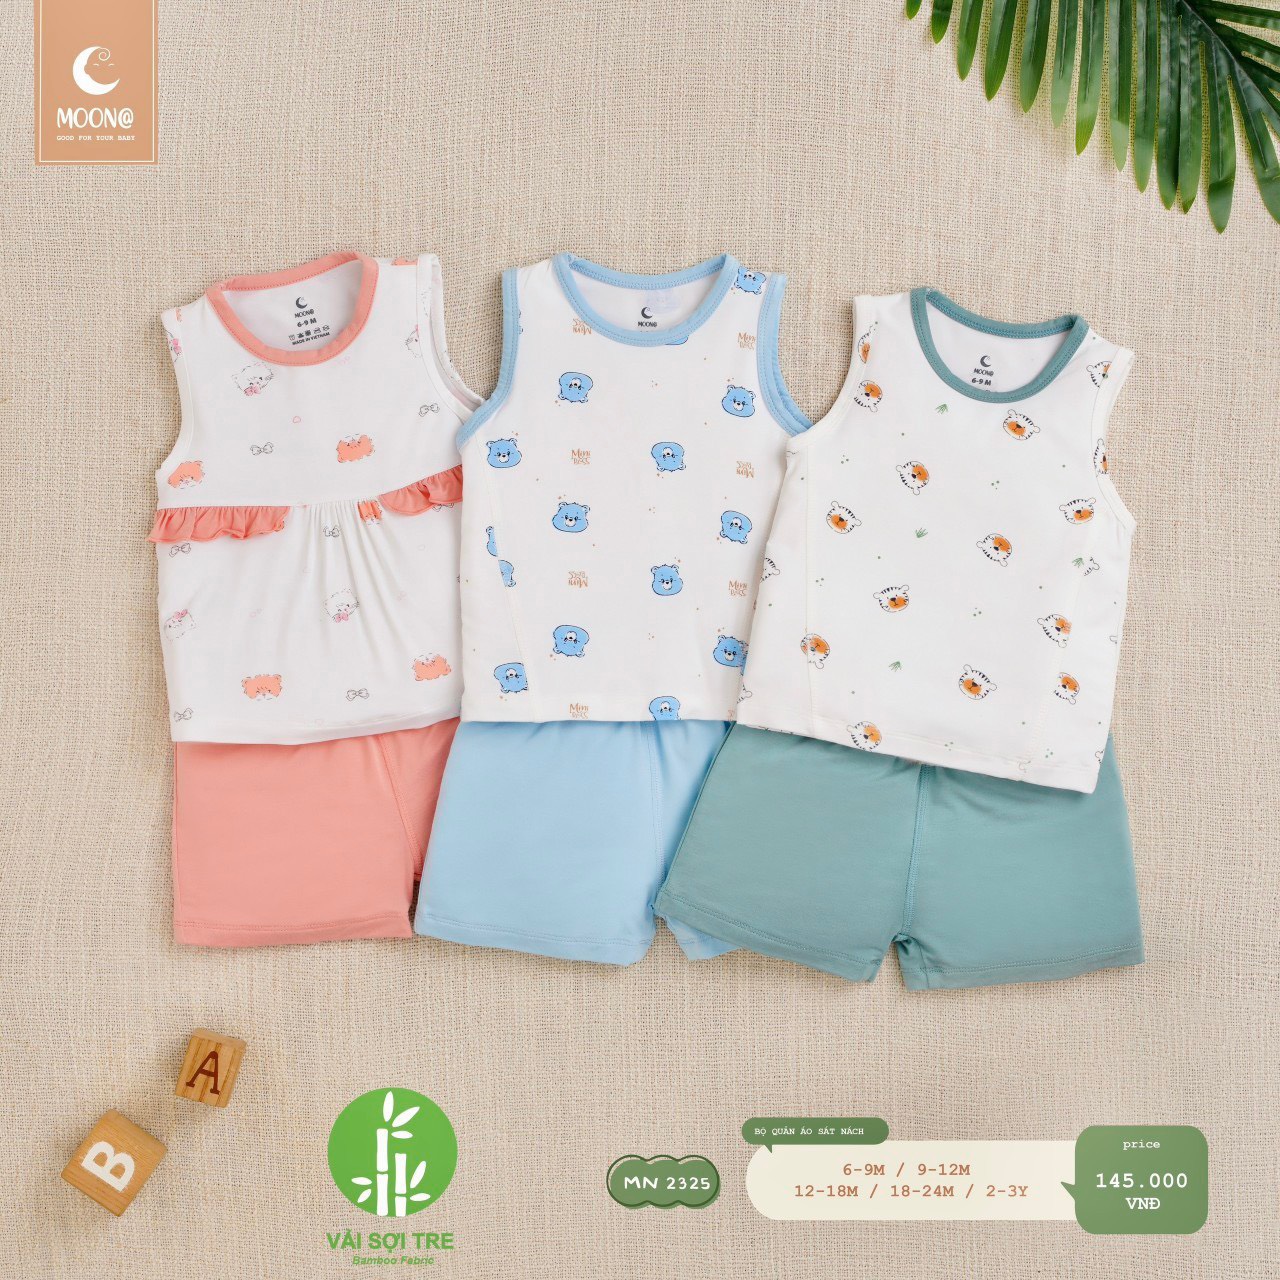 MOON - Bộ quần áo ba lỗ cho bé từ 6 tháng đến 3 tuổi